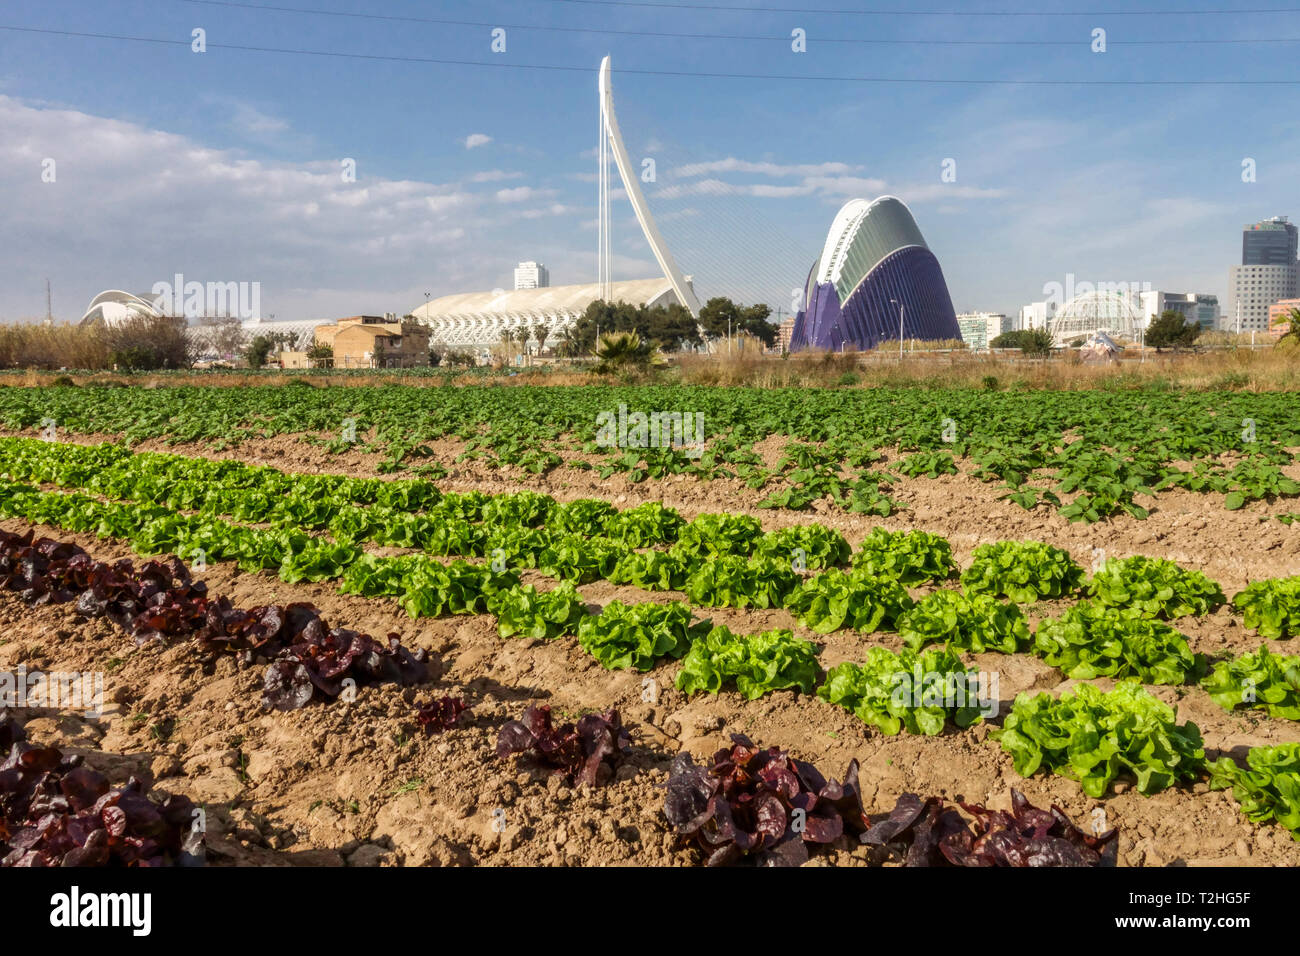 Spaín Valencia City of Science, Spain agriculture lettuce field farm Stock Photo